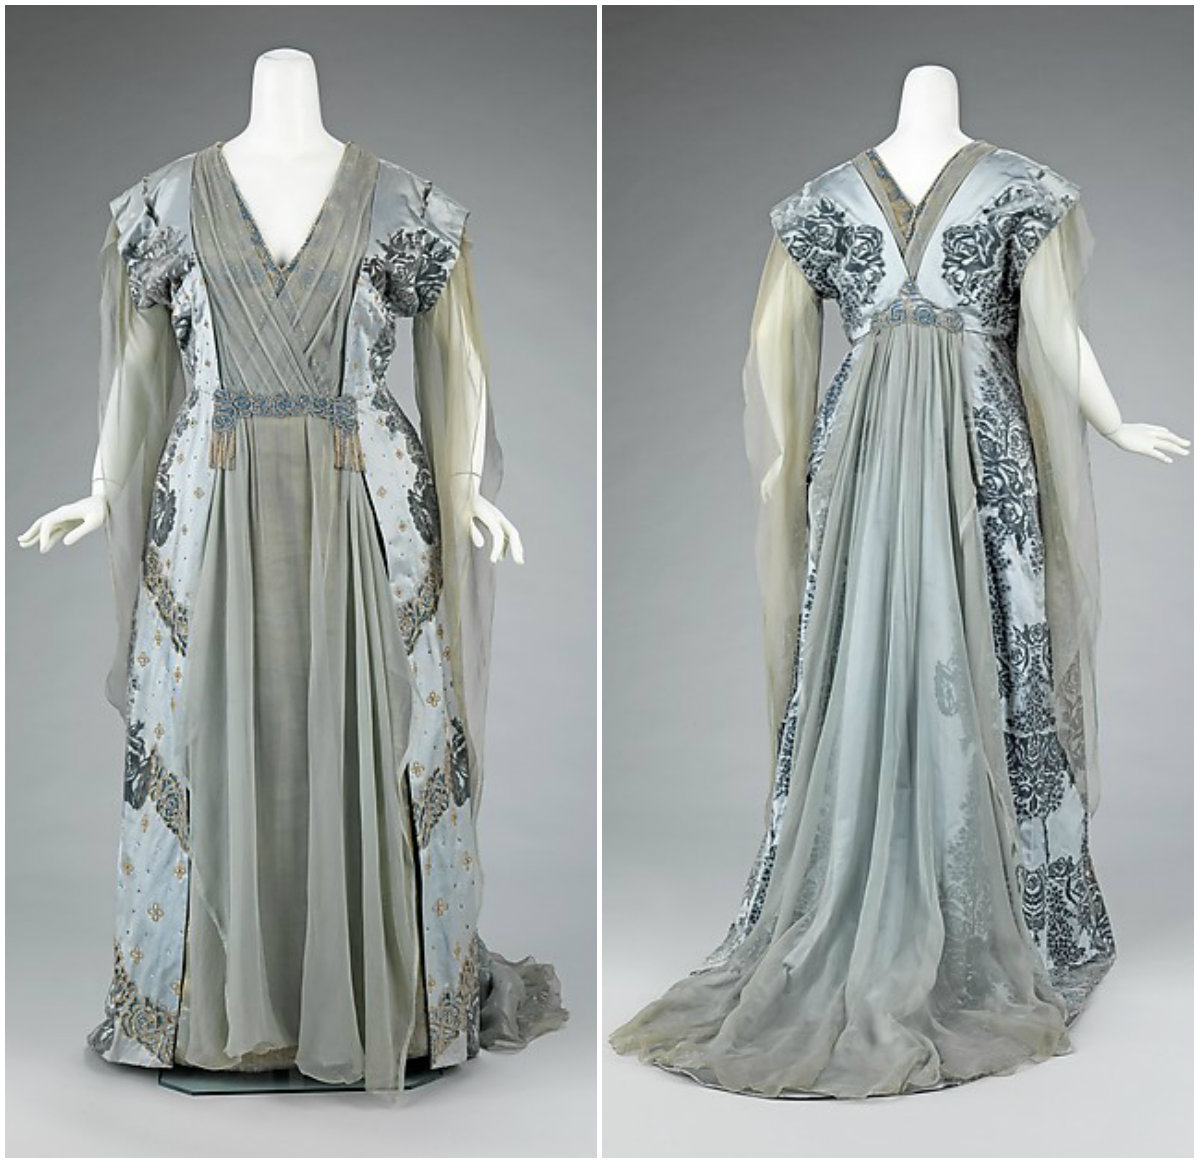 1910. Tea Gown. Silk, rhinestones, metal. metmuseum